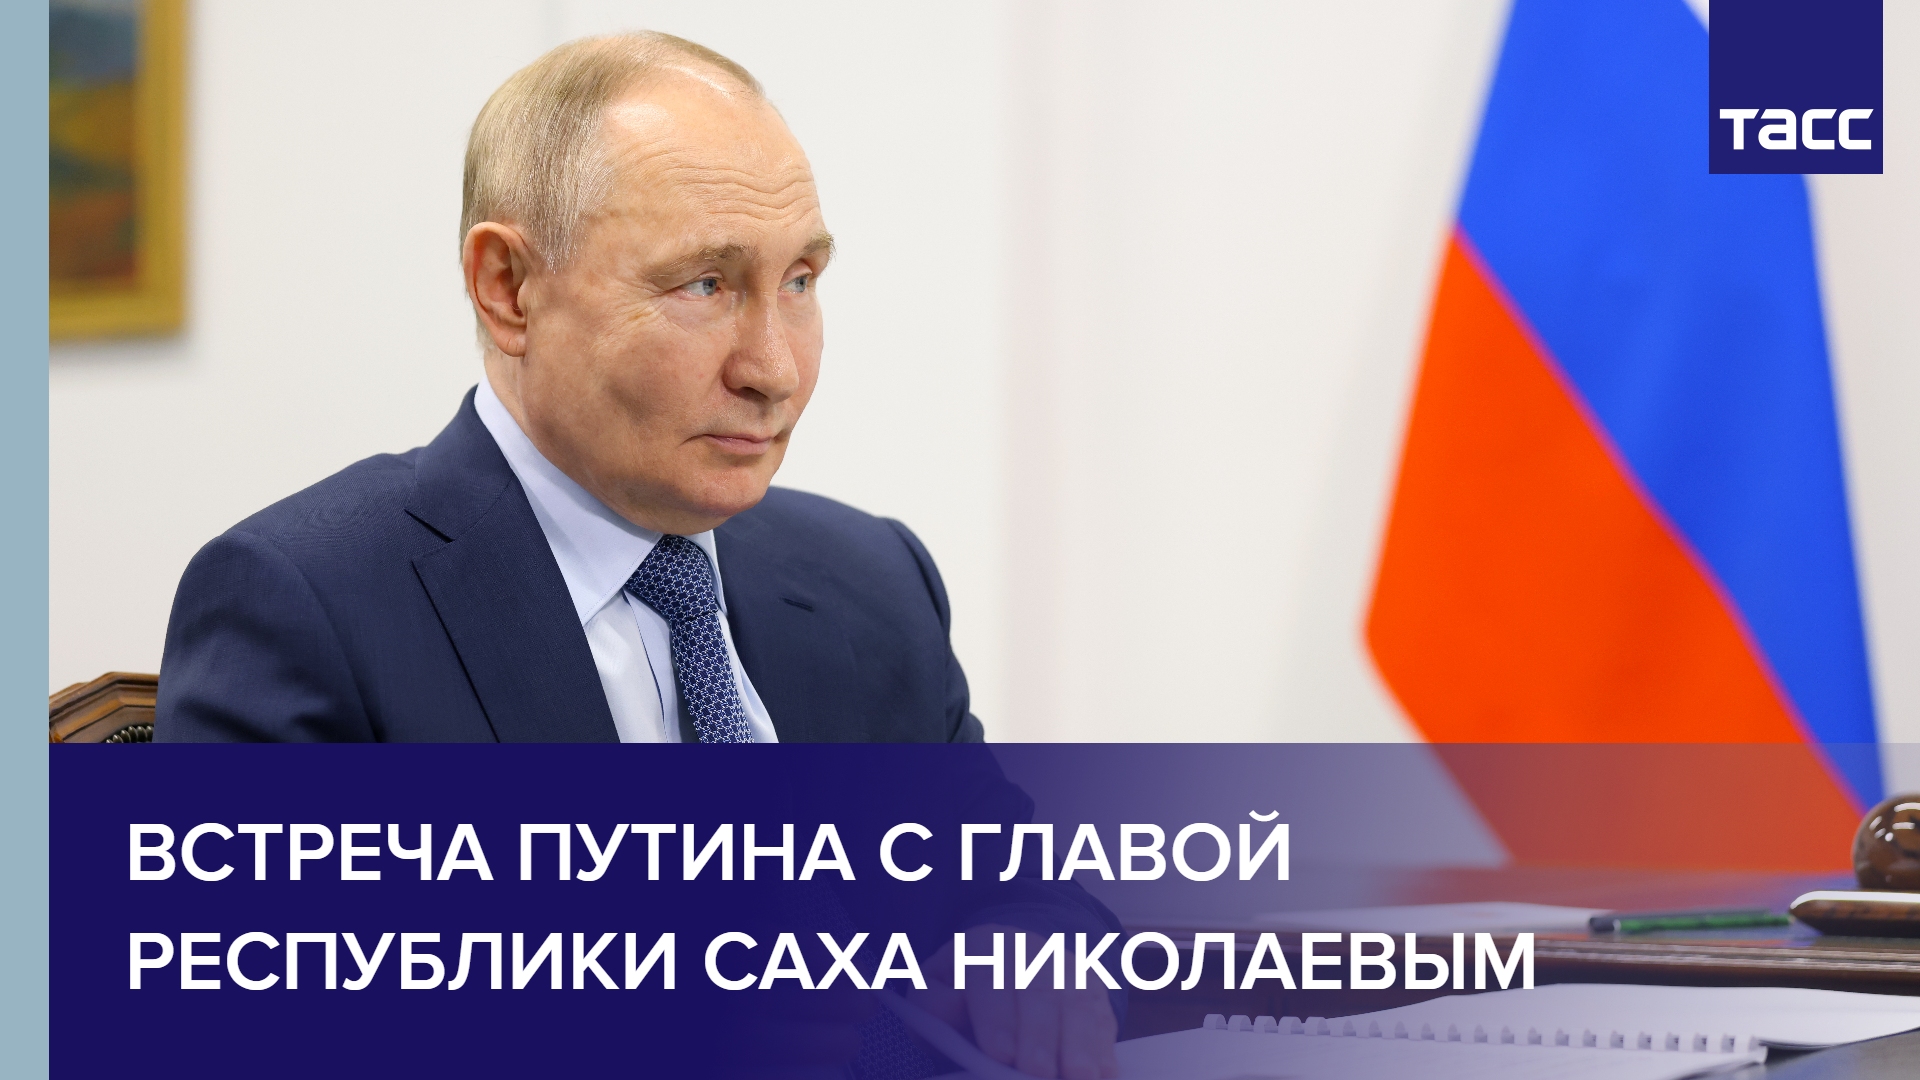 Встреча Путина с главой Республики Саха Николаевым